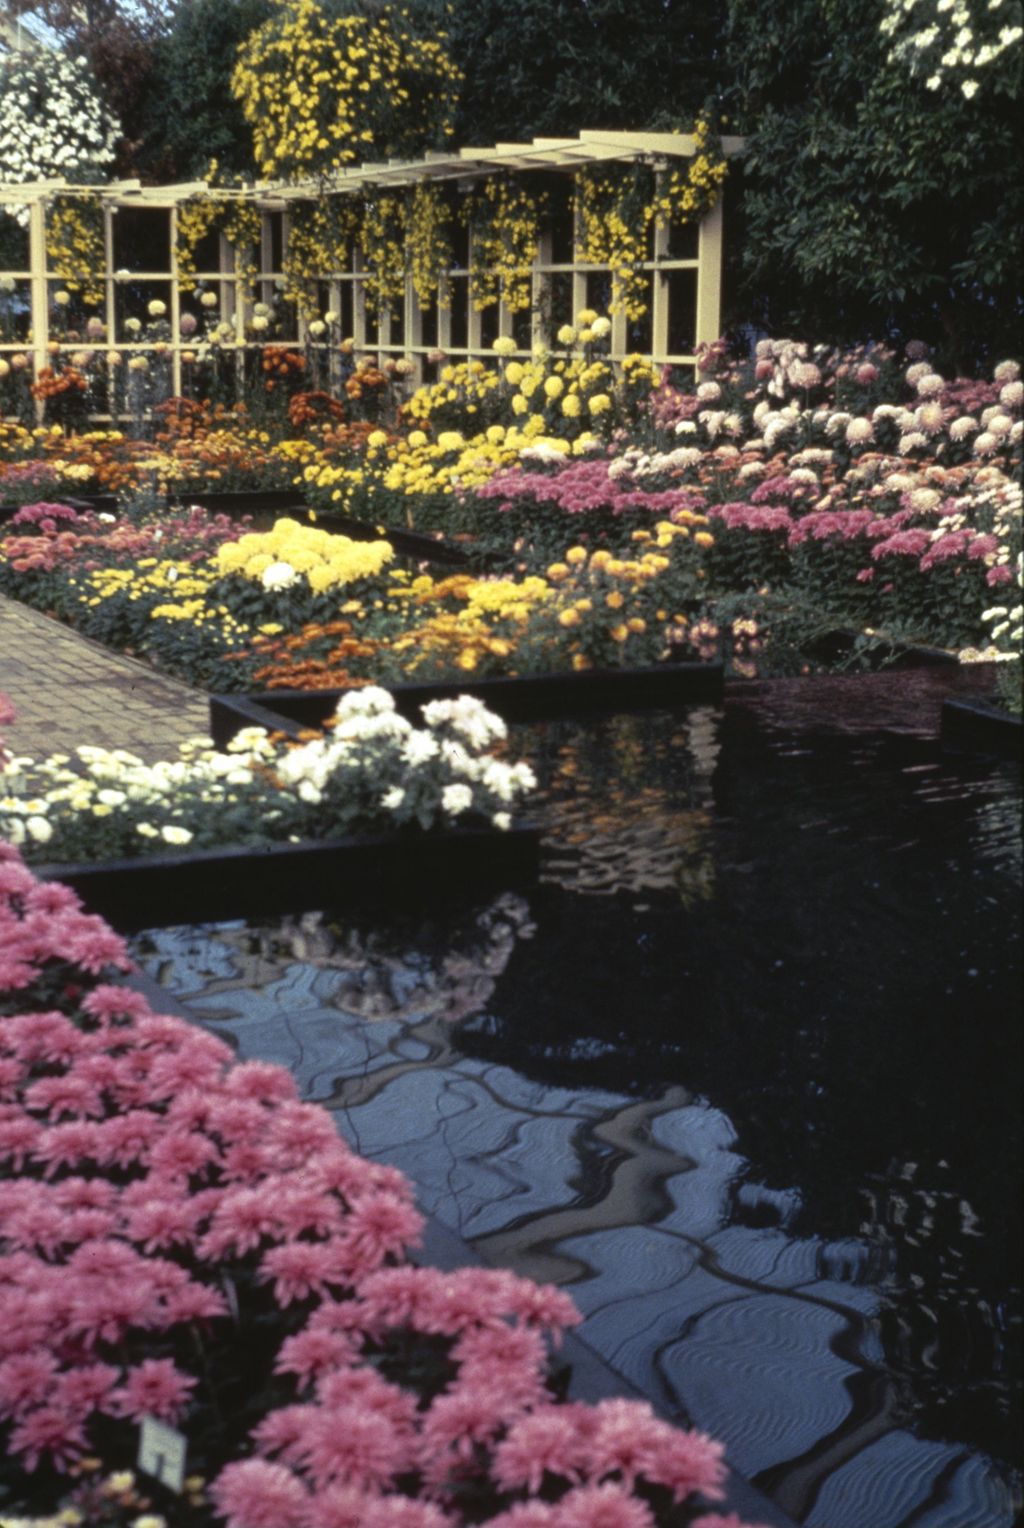 Miniature of Garfield Park flower garden